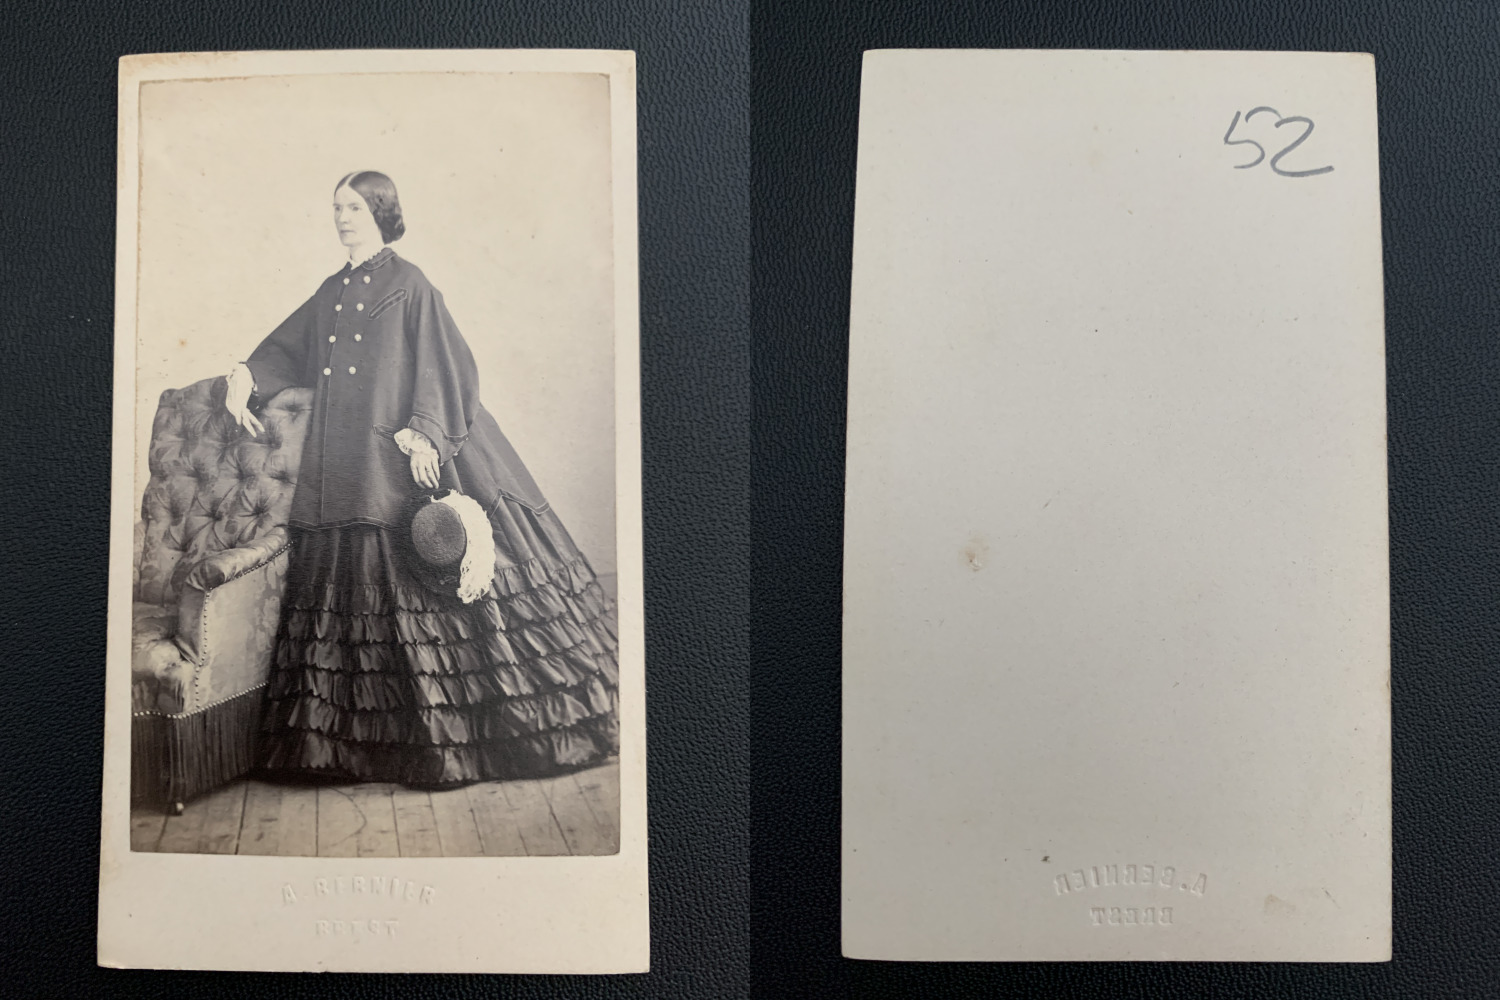 Bernier, Brest, lady in coat vintage albumen print. CDV. Alb Print